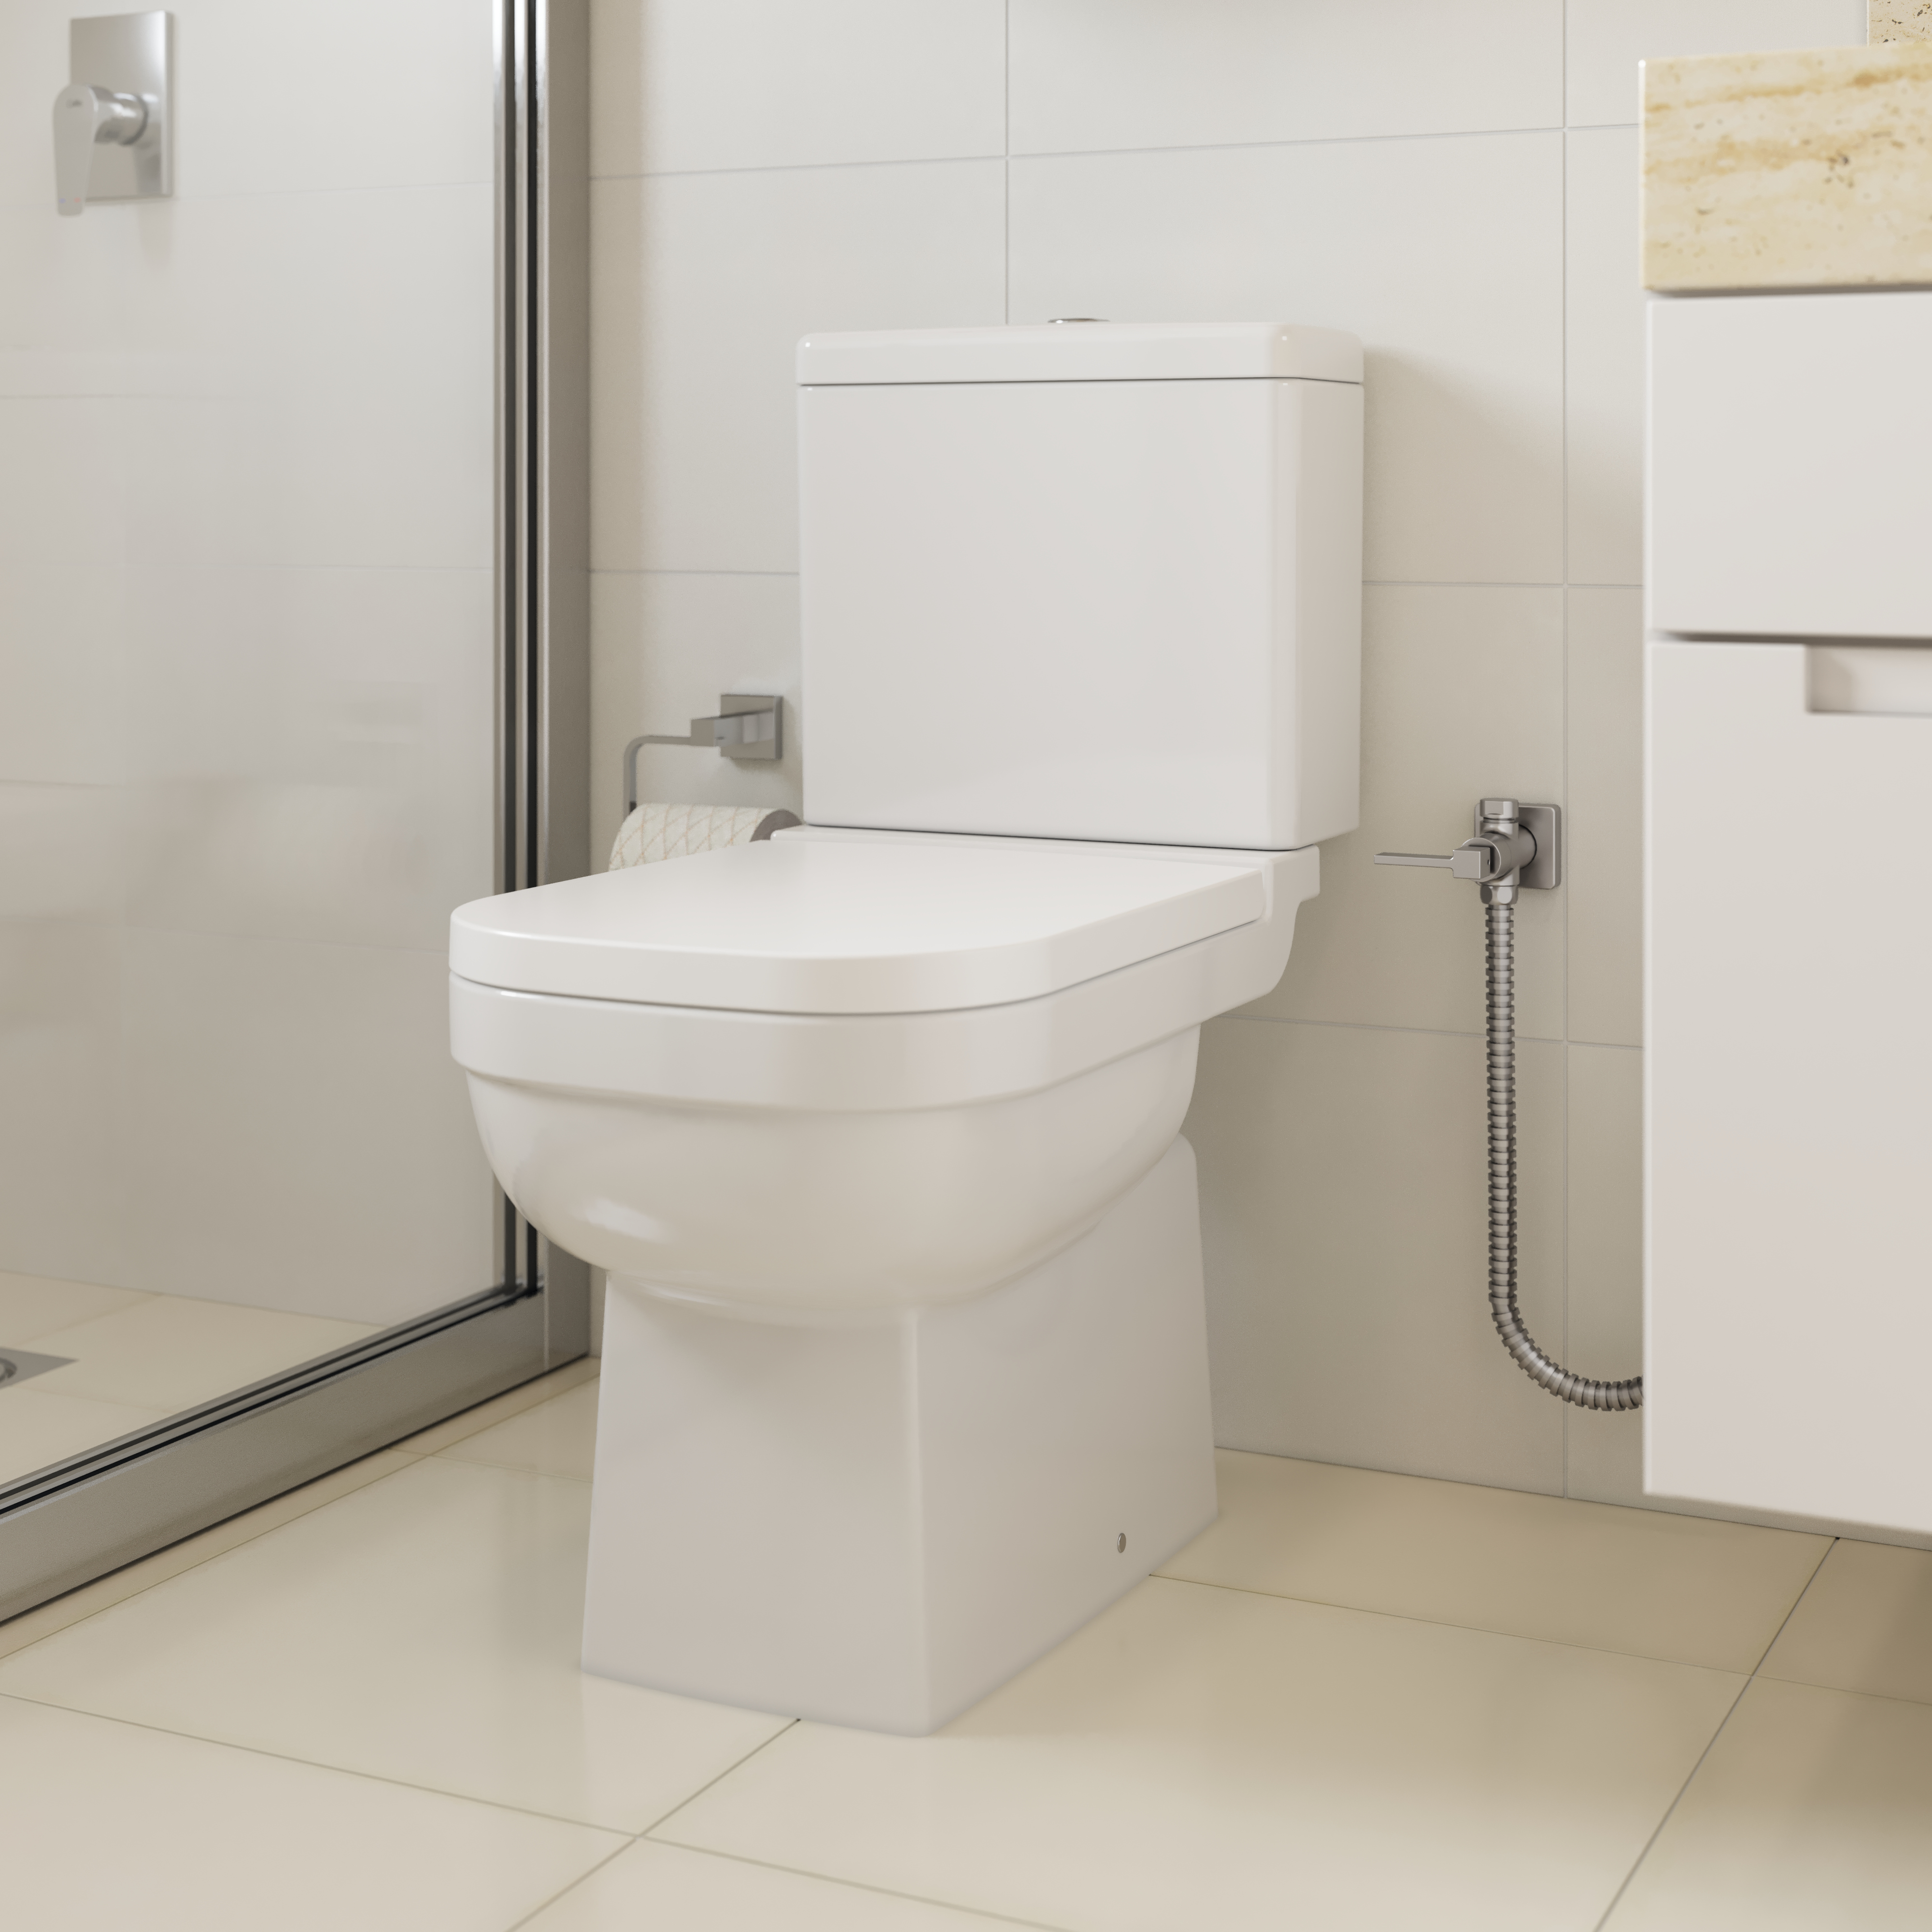 Assento sanitário: como escolher o modelo ideal para o vaso sanitário